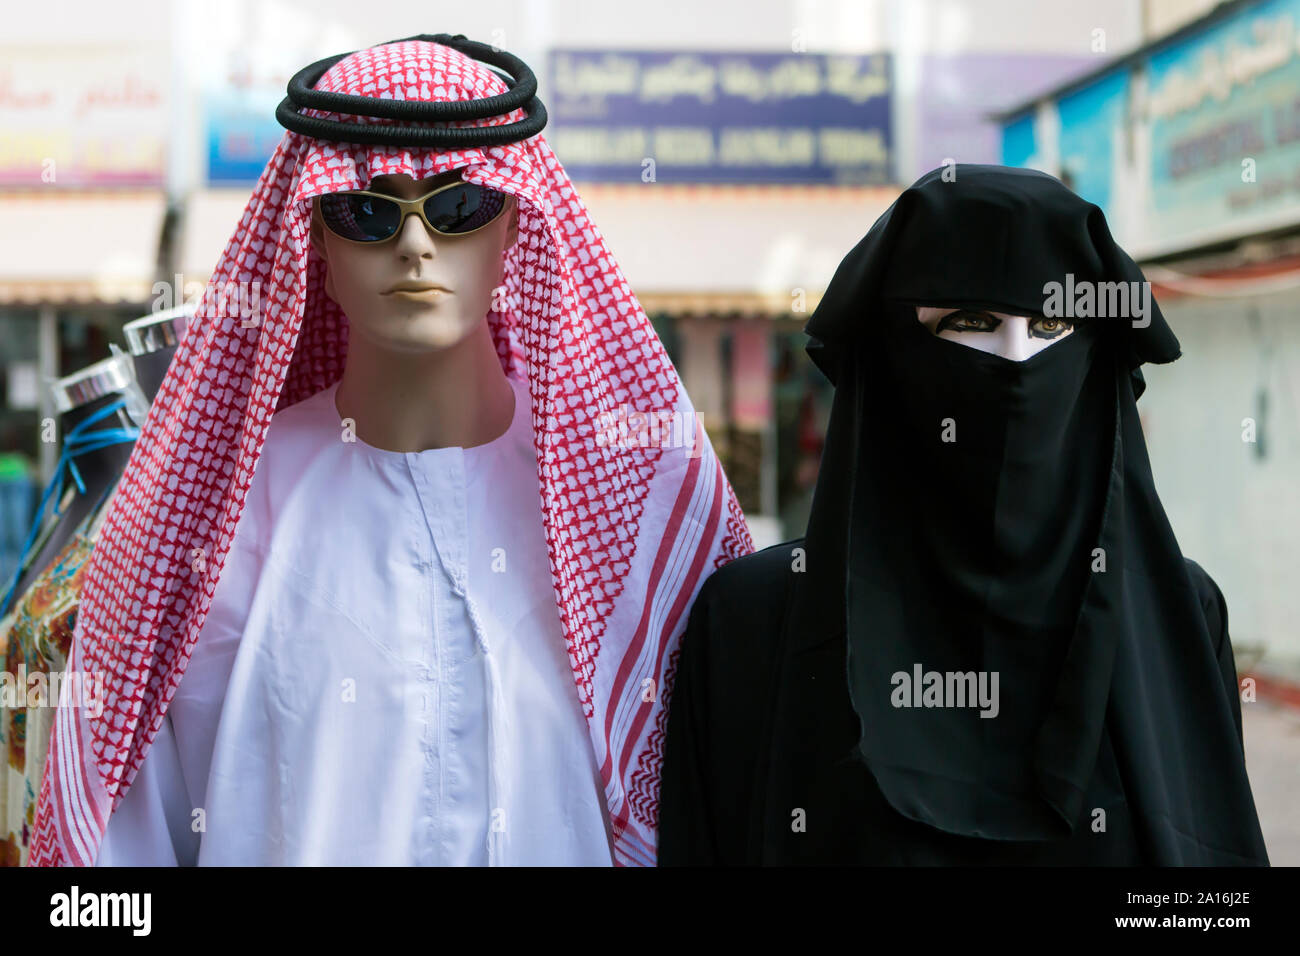 DUBAI - tradizionali abiti arabi sul display nella parte anteriore di un negozio nel souk. Foto Stock